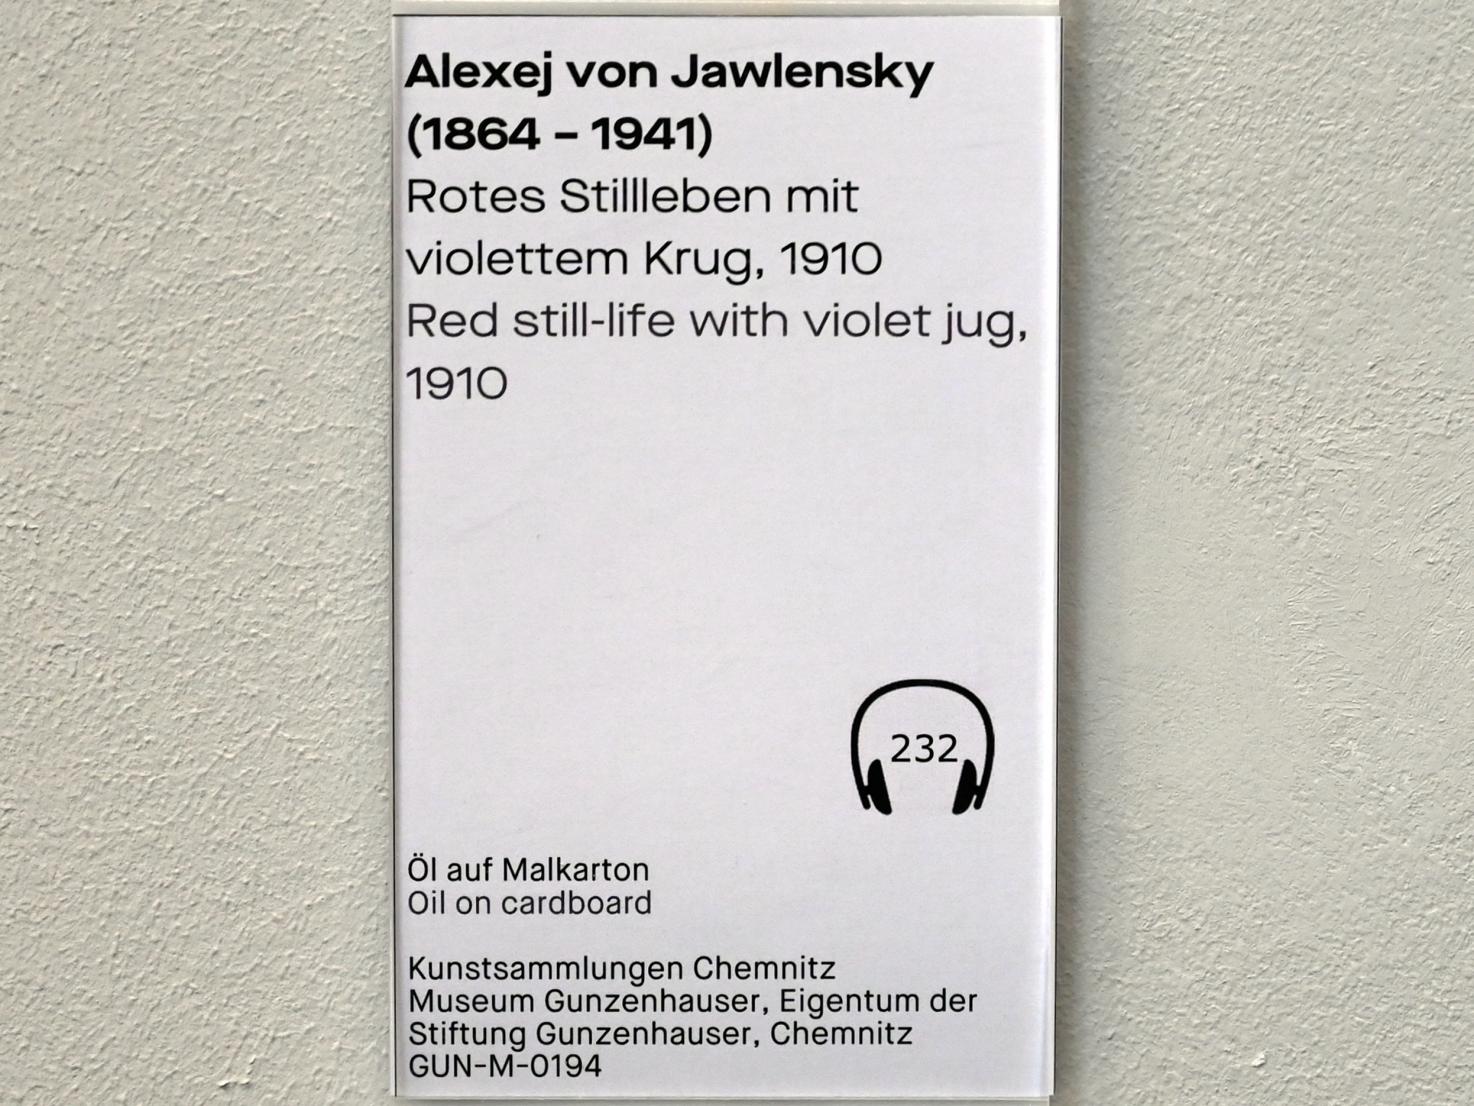 Alexej von Jawlensky (1893–1938), Rotes Stillleben mit violettem Krug, Chemnitz, Museum Gunzenhauser, Saal 3.6 - Der blaue Reiter, 1910, Bild 2/2